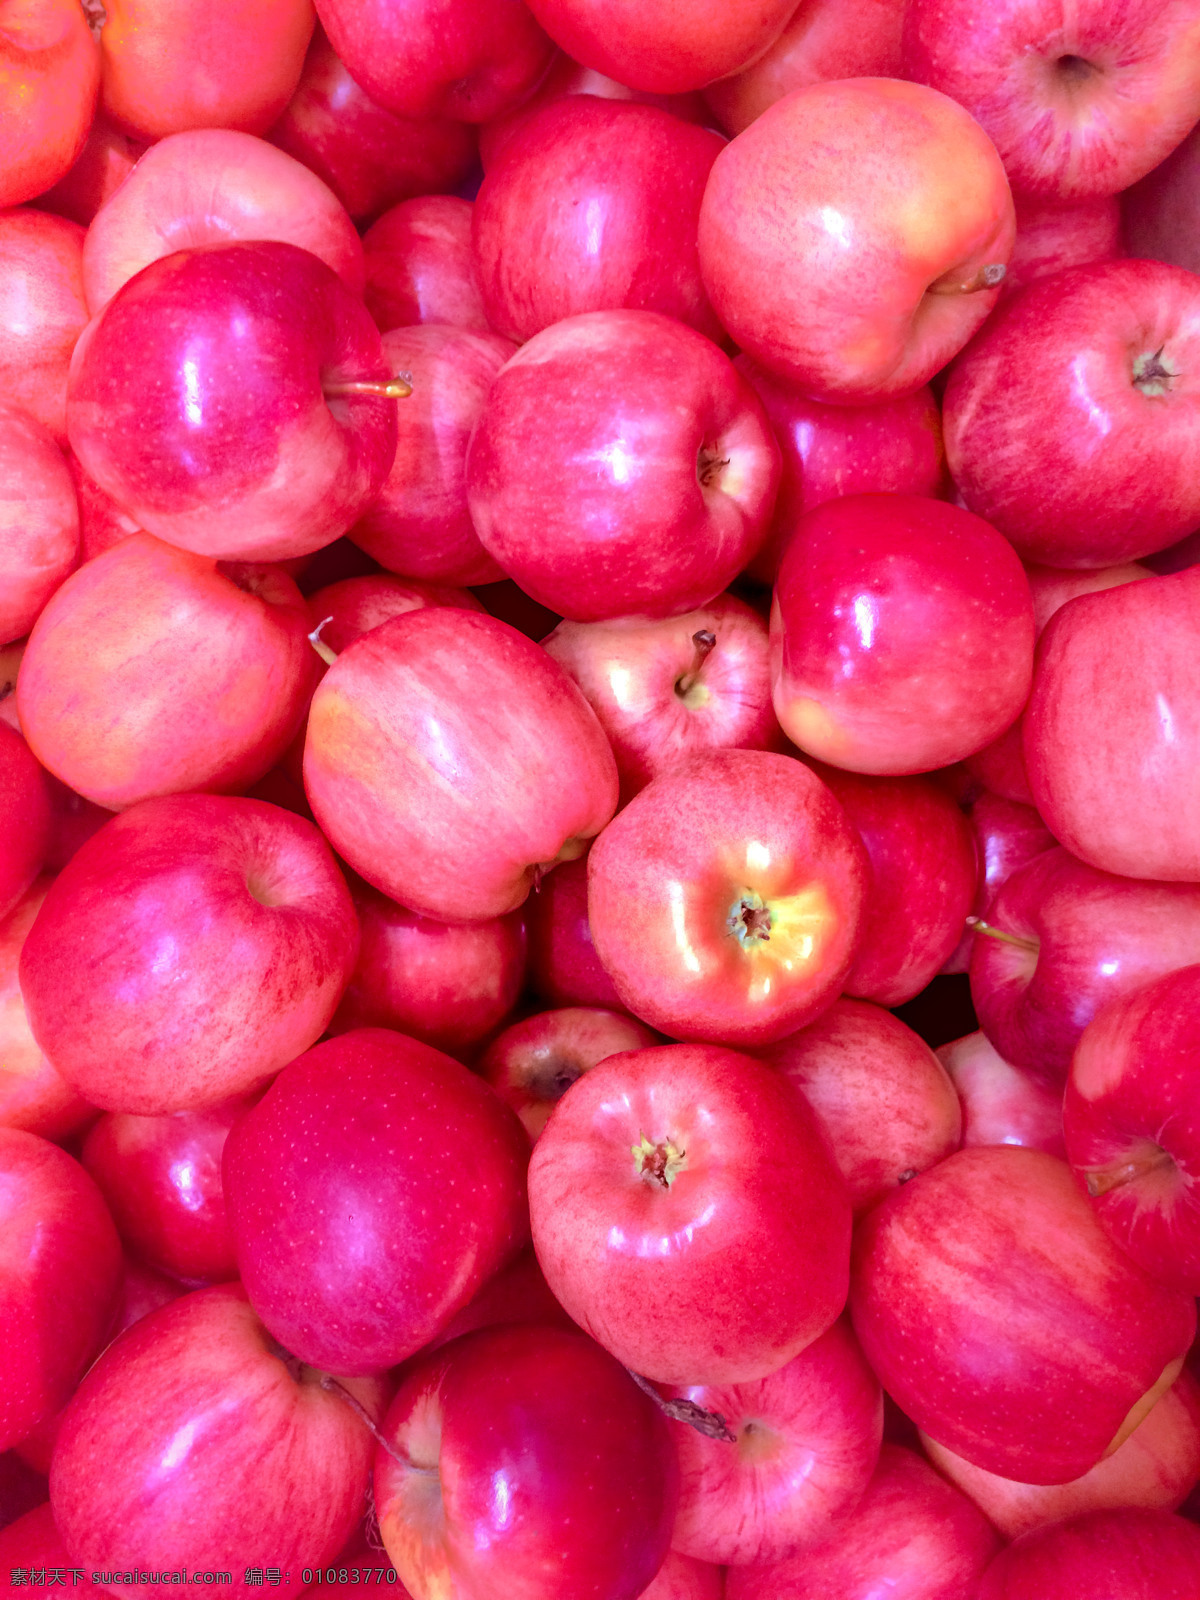 新鲜的苹果 苹果 红富士苹果 有机水果 绿色水果 农产品 鲜果 生物世界 水果